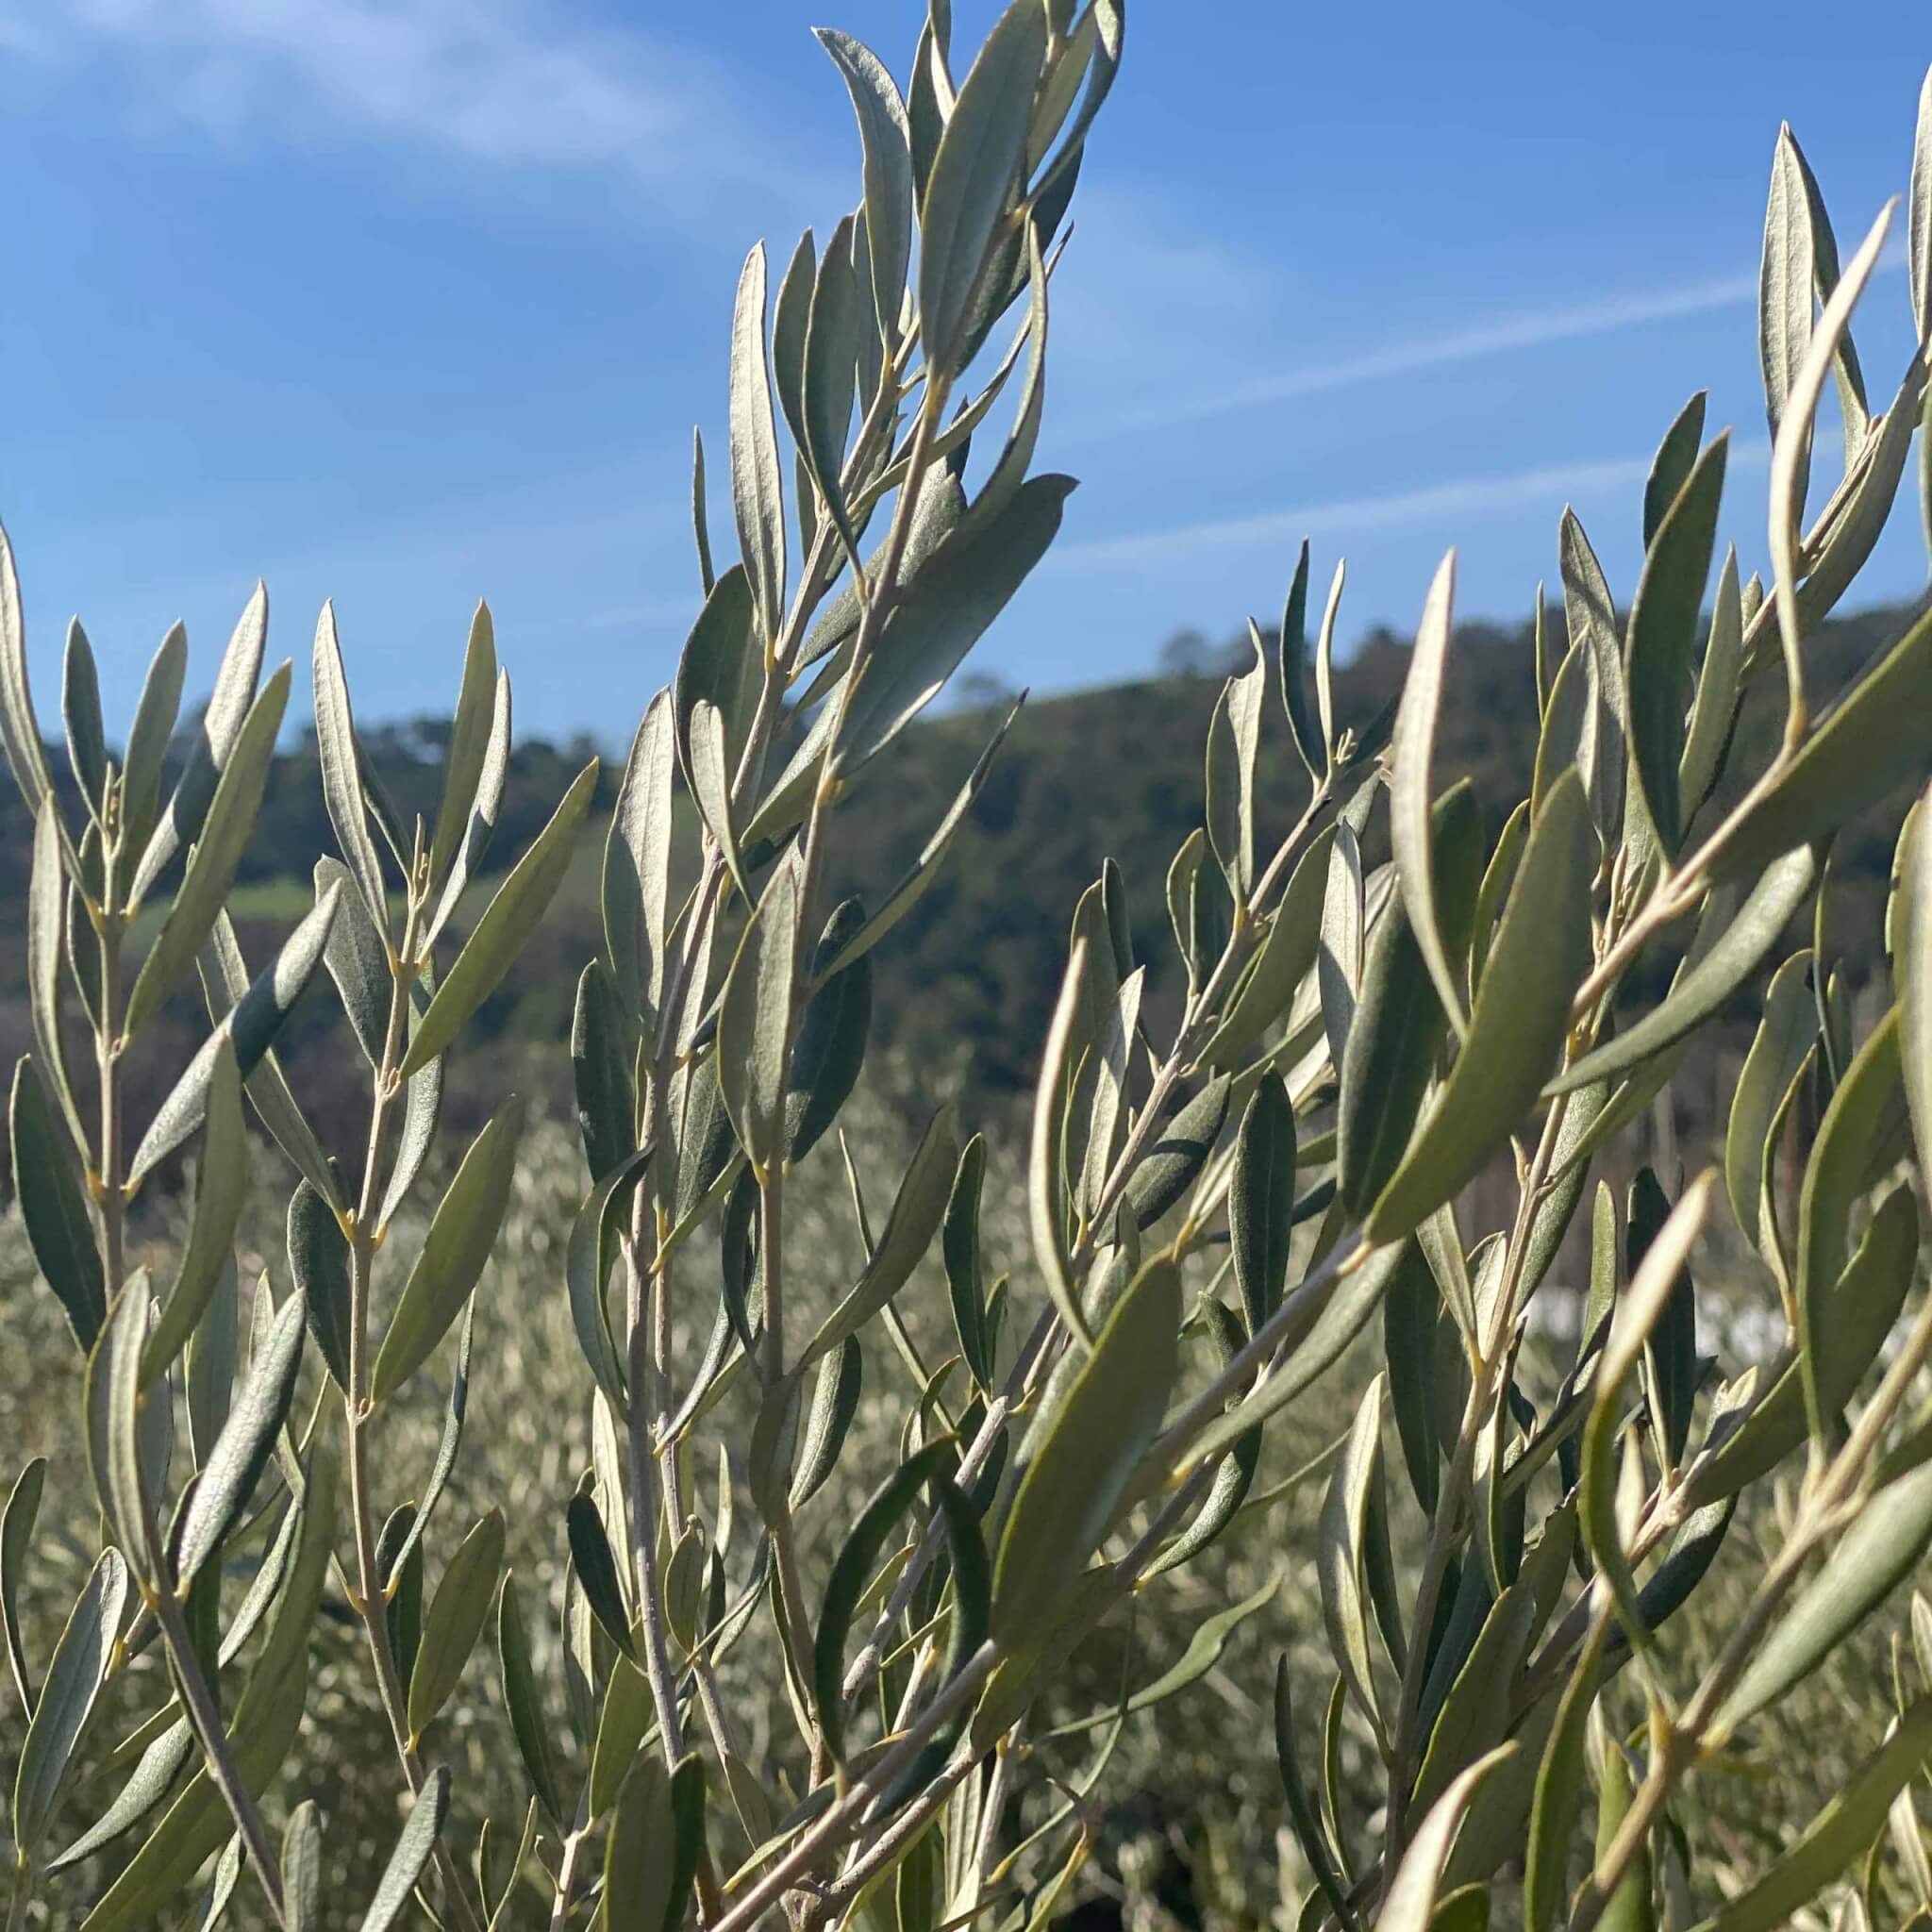 Olive Tree (olea europea)